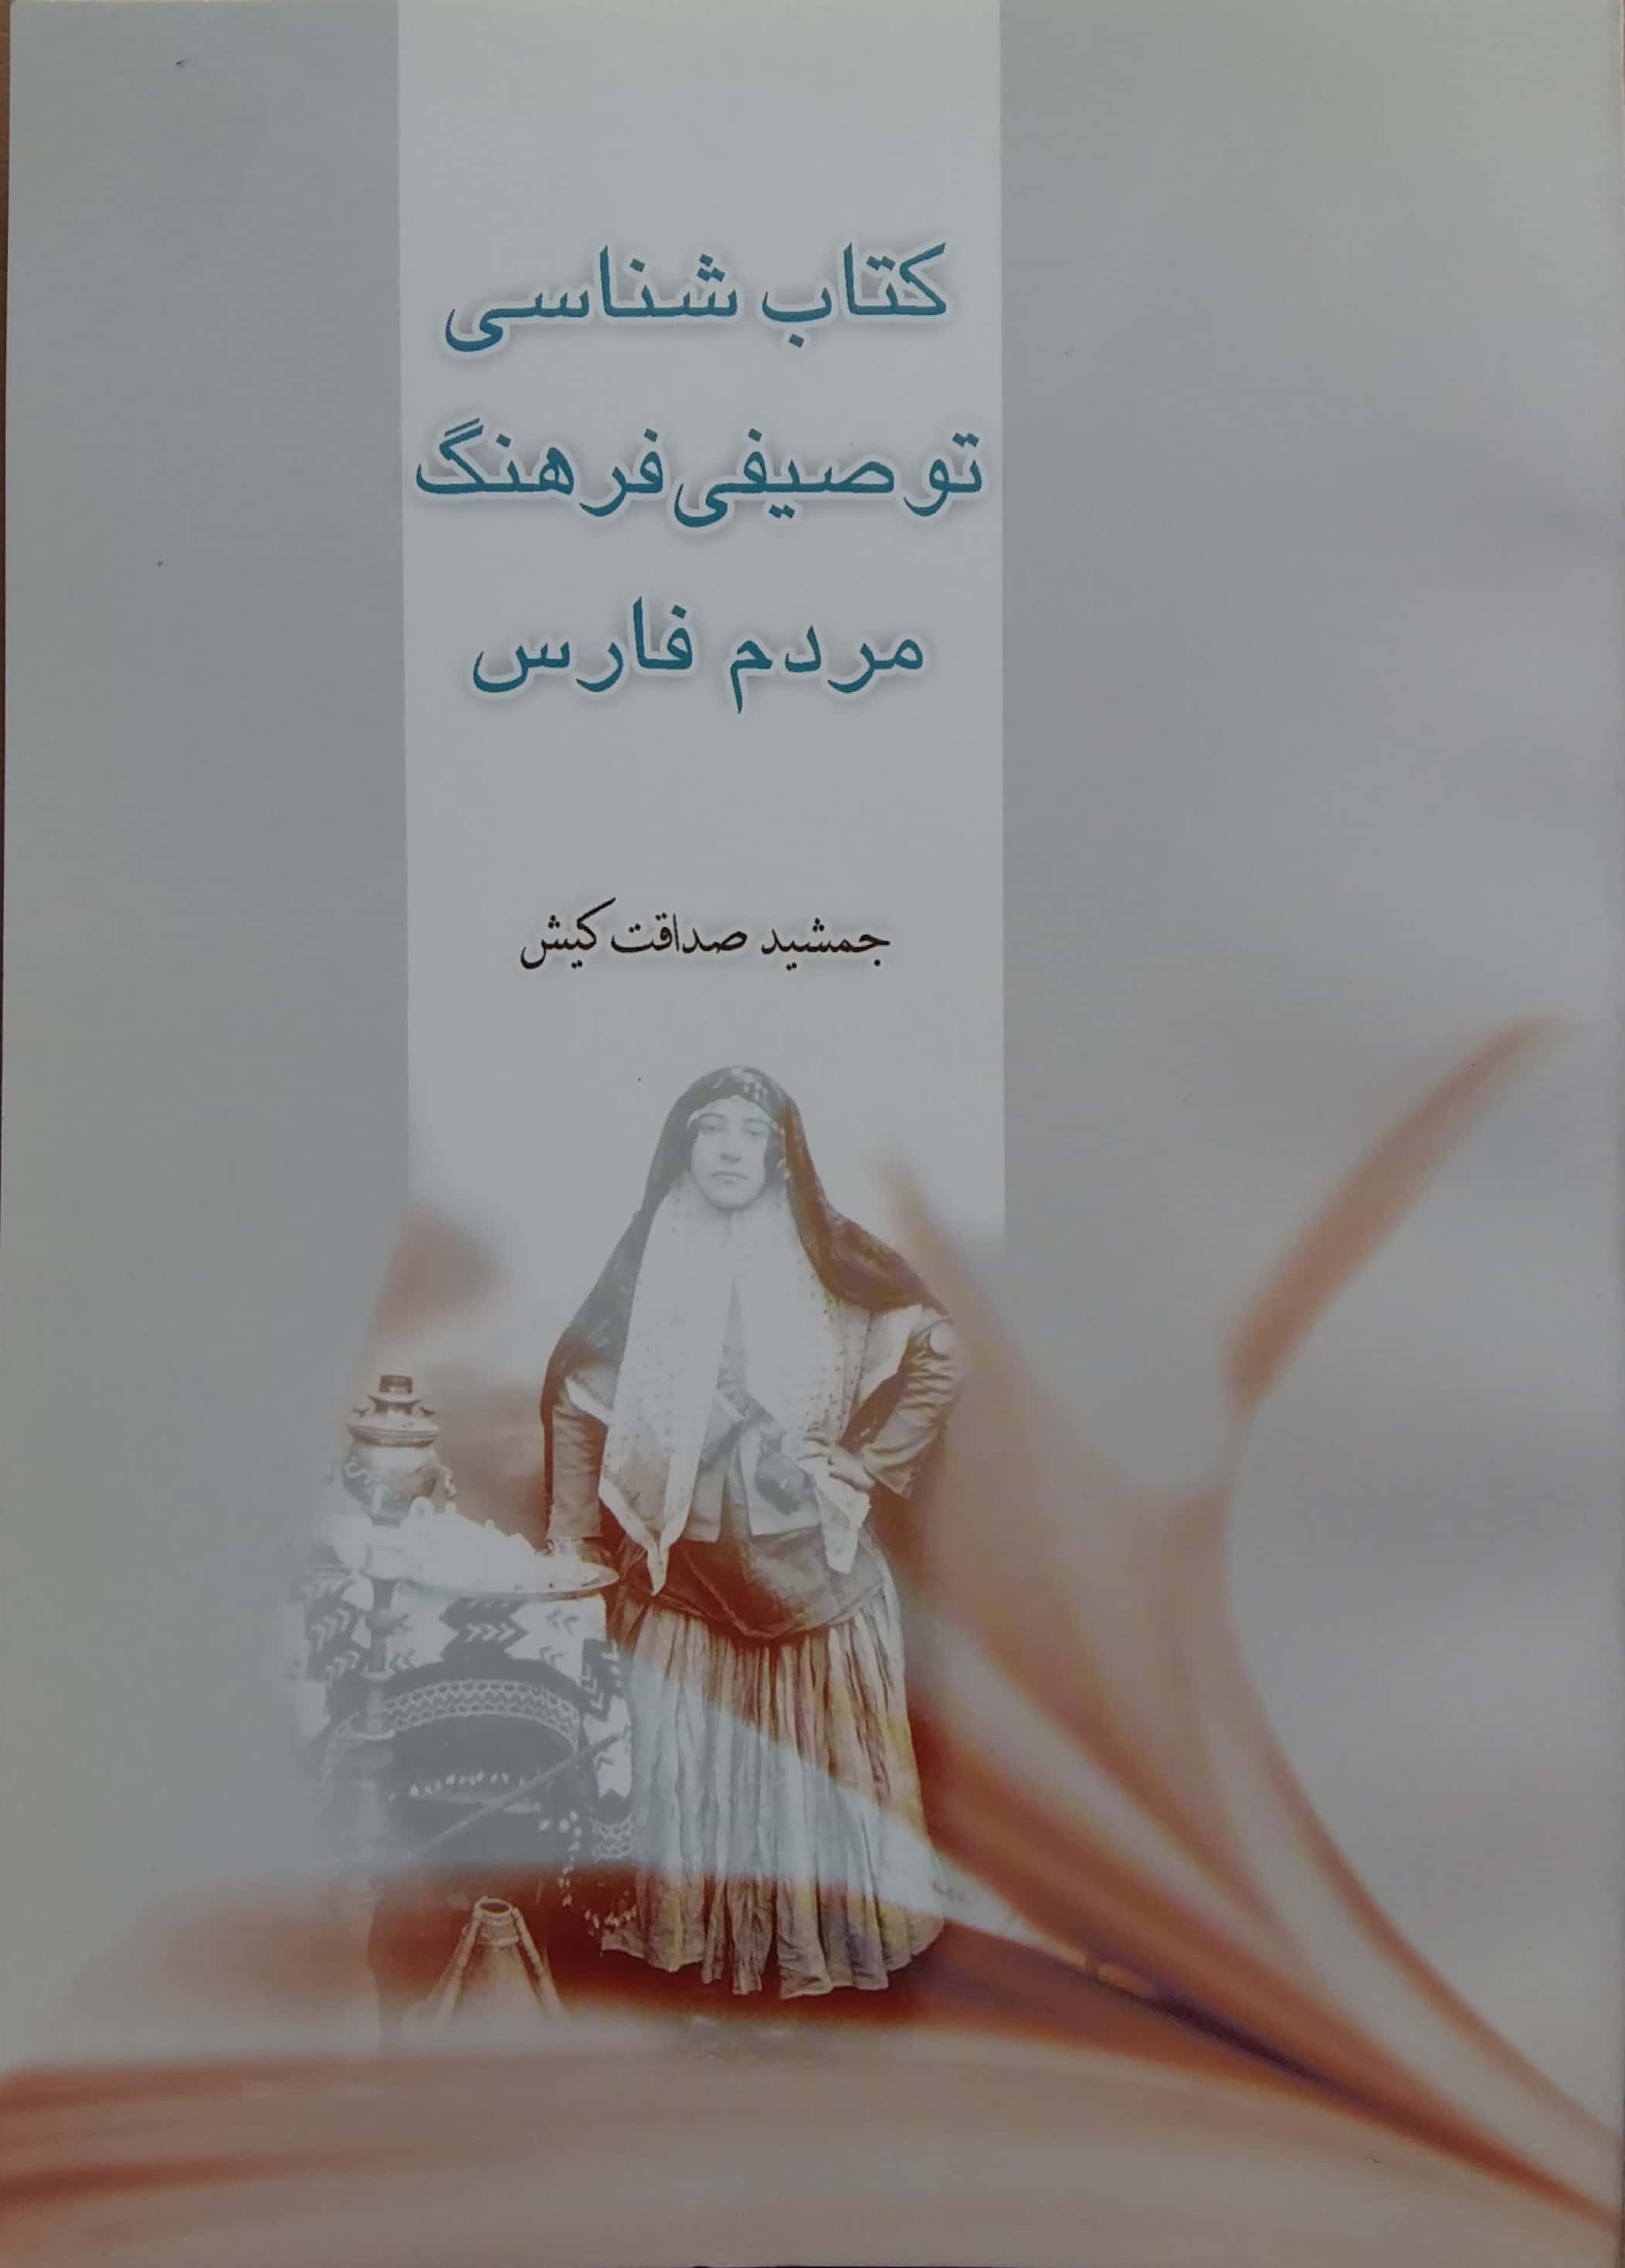 بنياد فارس شناسي کتاب شناسی توصیفی فرهنگ مردم فارس(مولف جمشید صداقت کیش)